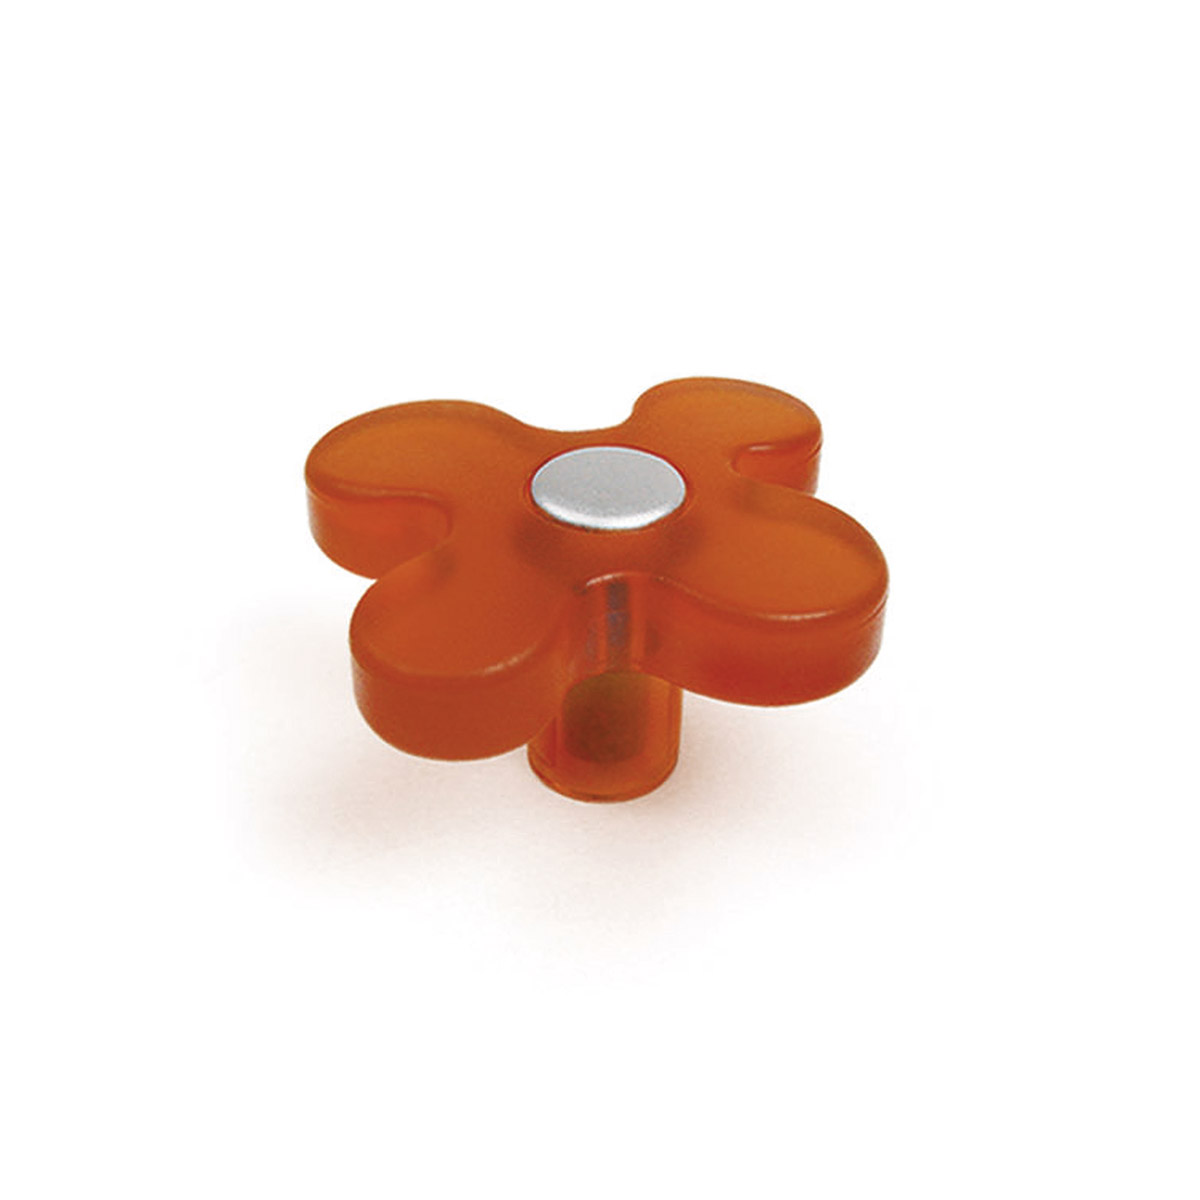 Pomo de plástico con acabado naranja, dimensiones: 49x49x26mm Ø: 49mm